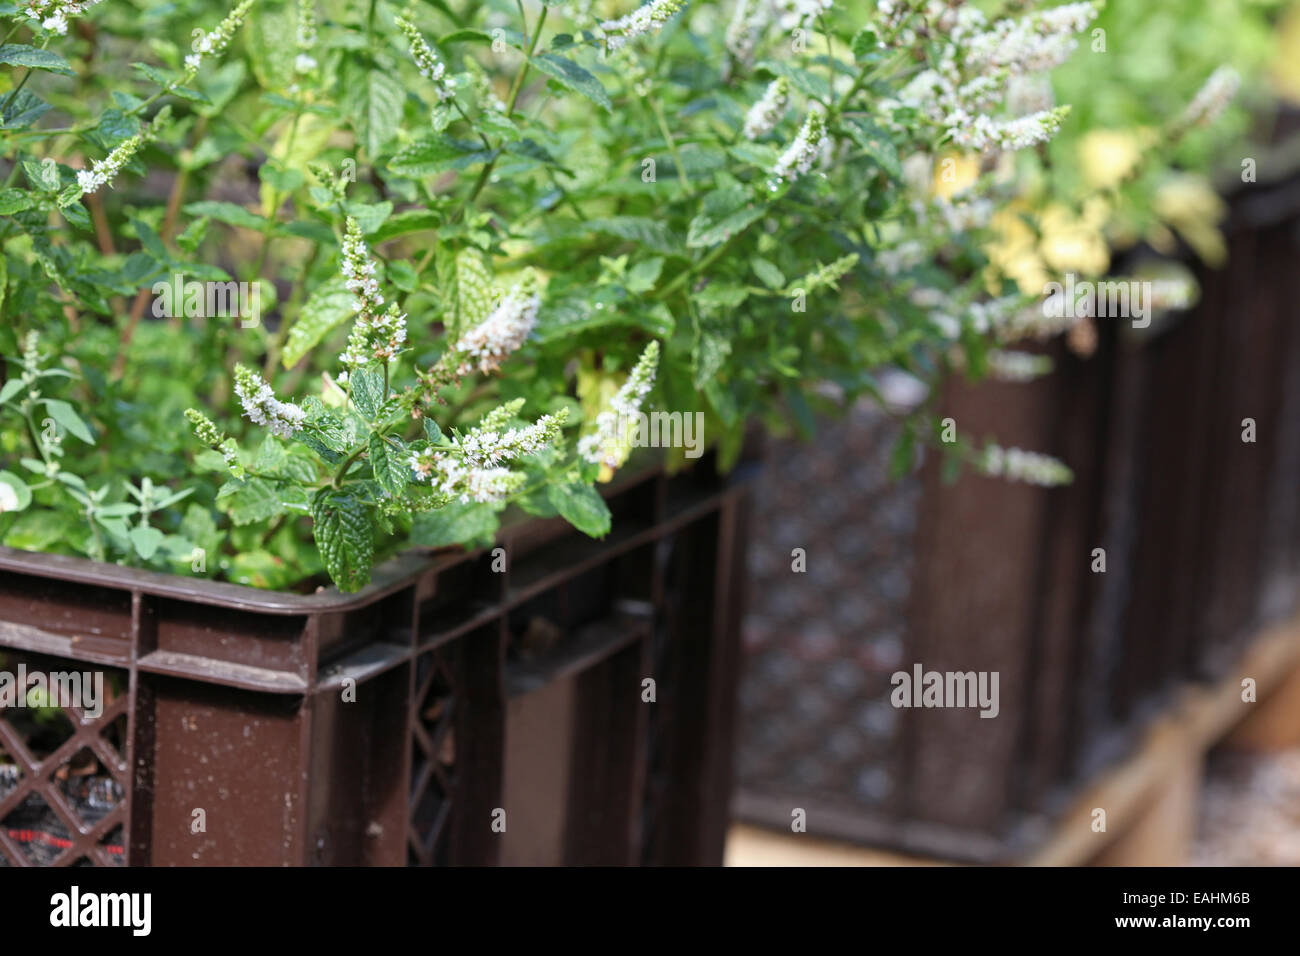 Marokkanische Pfefferminze in Anlage-Boxen in einem urban gardening Projekt in Deutschland gezüchtet Stockfoto